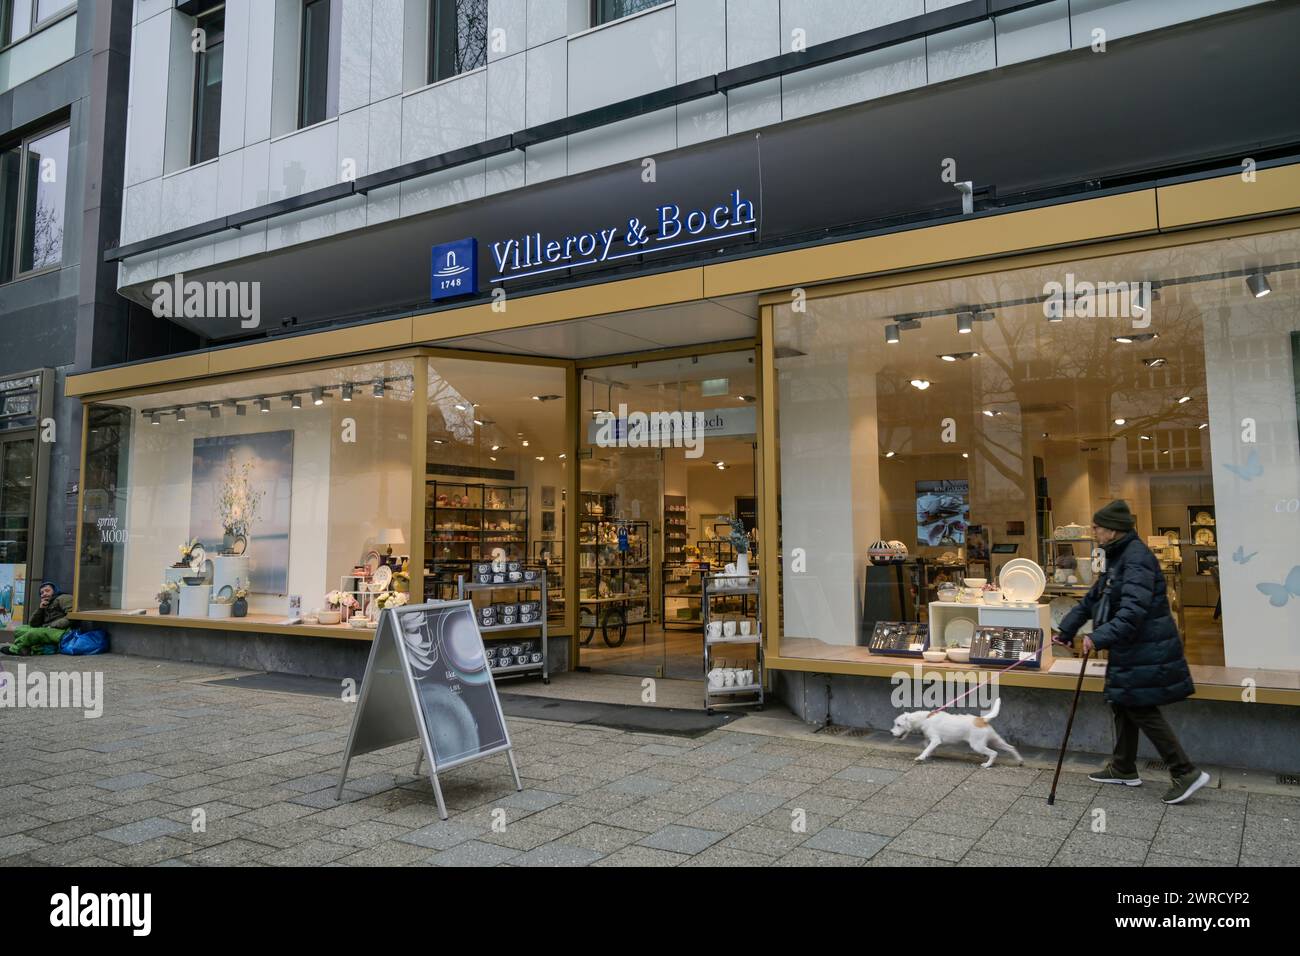 Villeroy & Boch, Geschäft, Kurfürstendamm, Charlottenburg, Berlin, Deutschland Banque D'Images